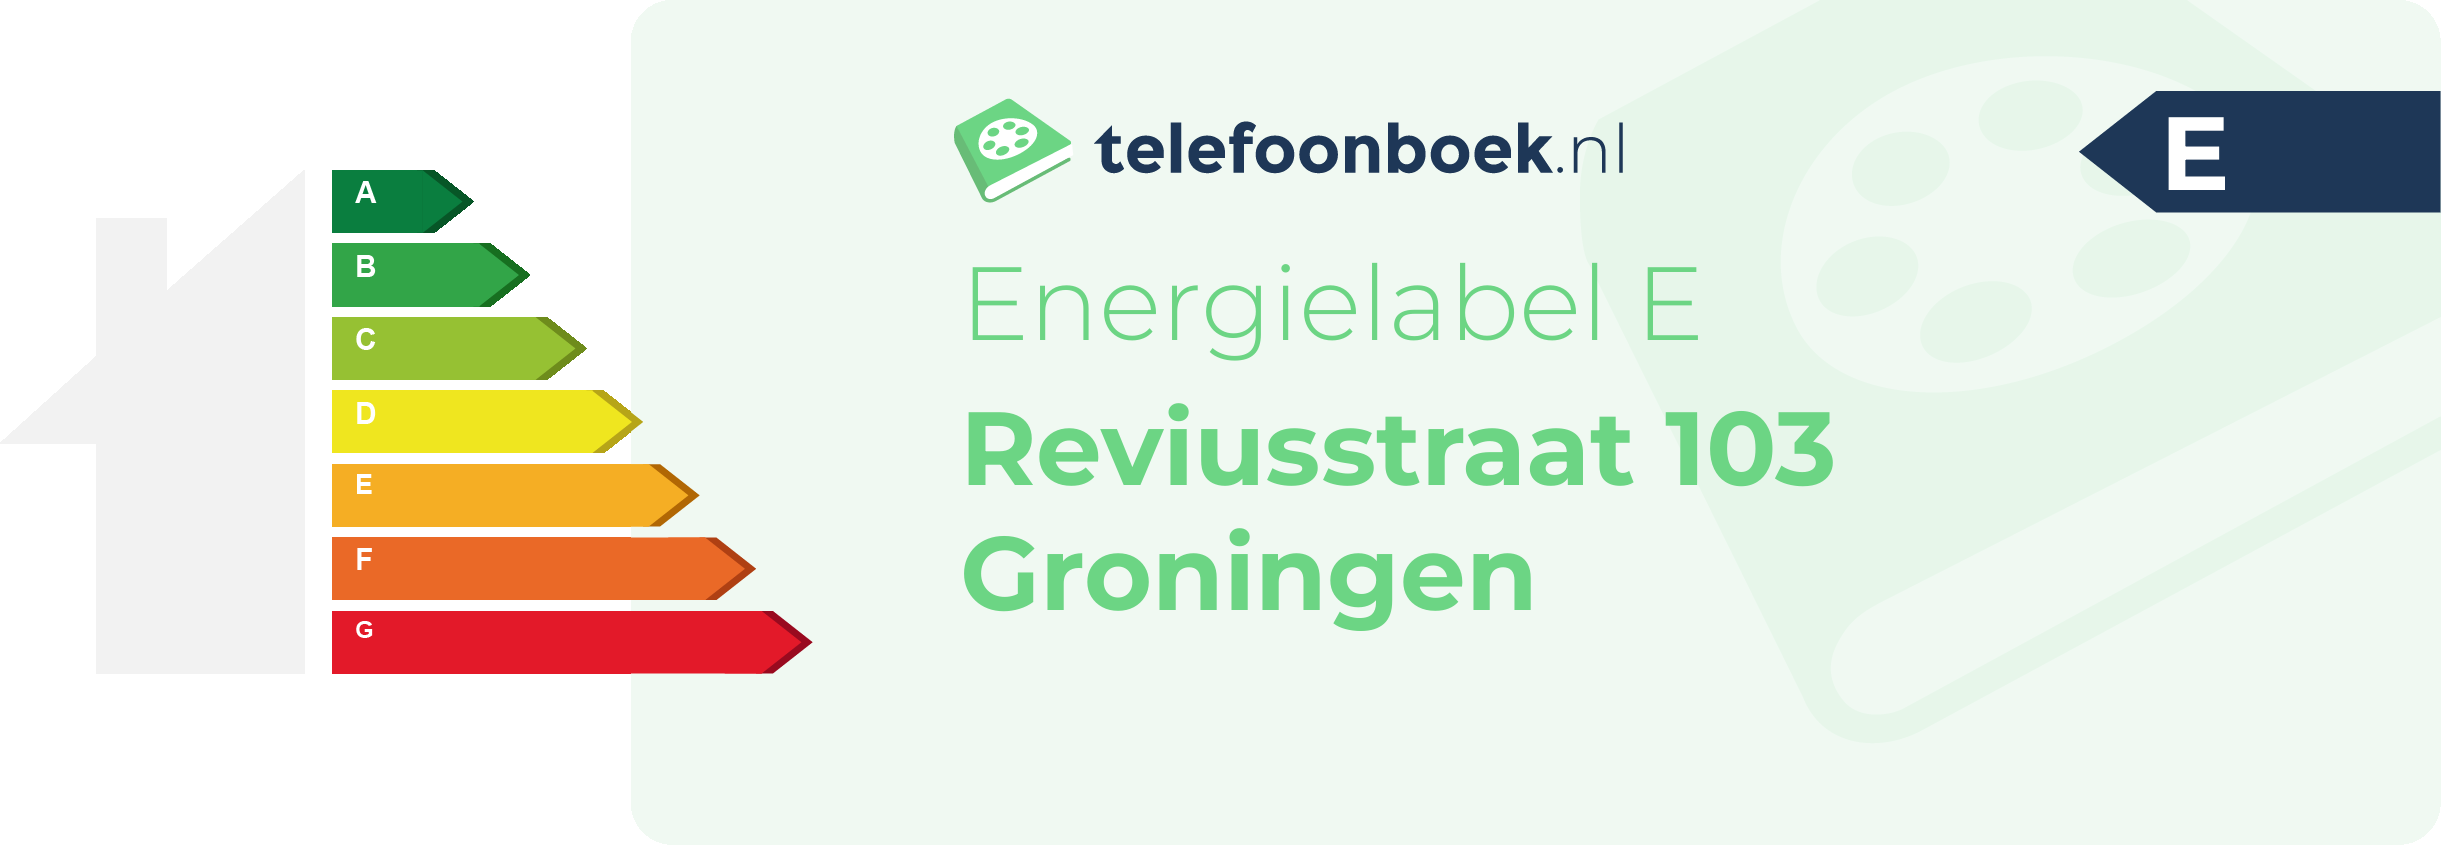 Energielabel Reviusstraat 103 Groningen